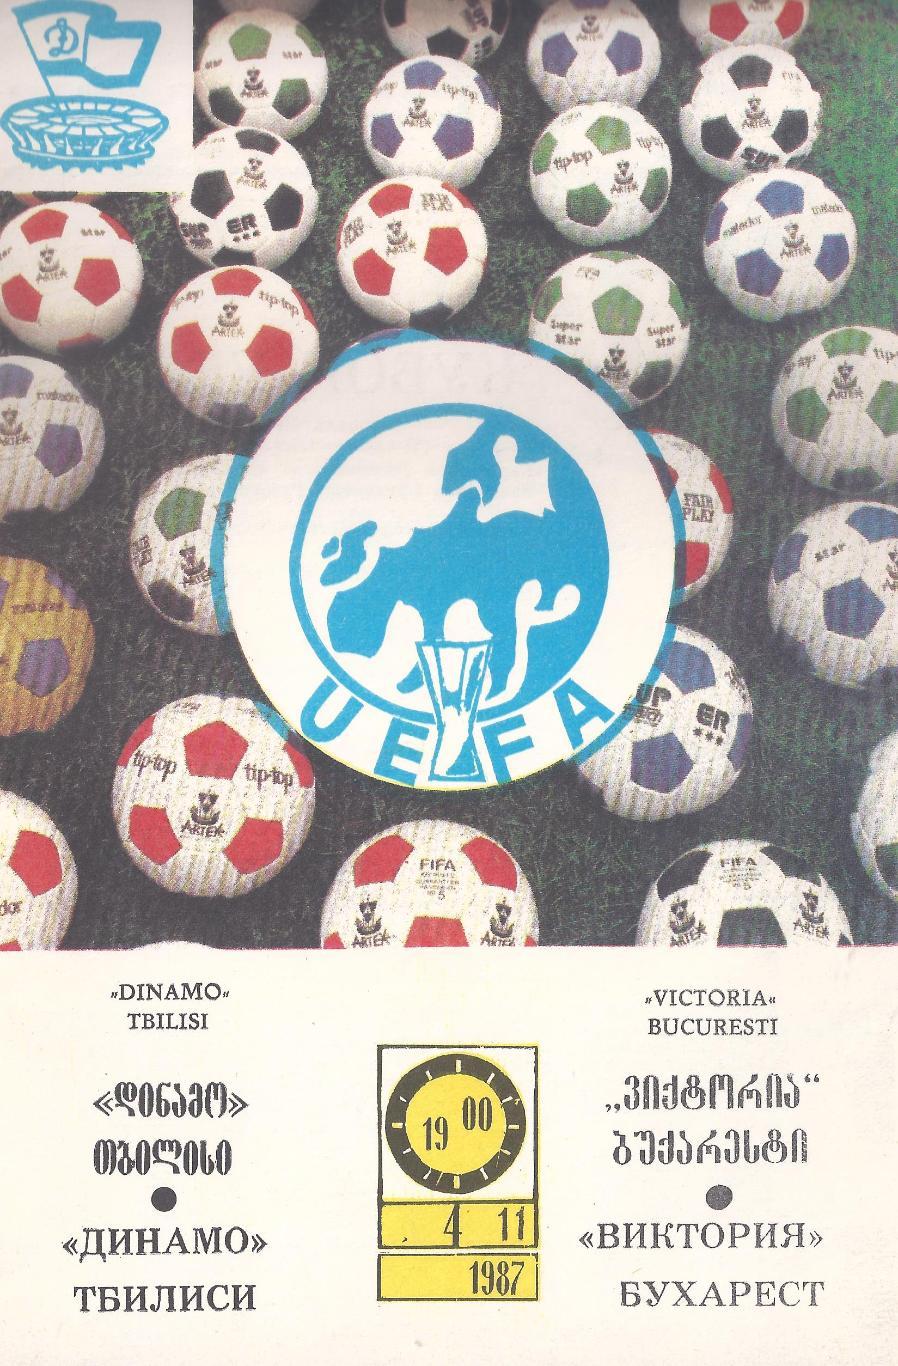 Кубок УЕФА - Динамо Тбилиси - Виктория Румыния - 1987 год